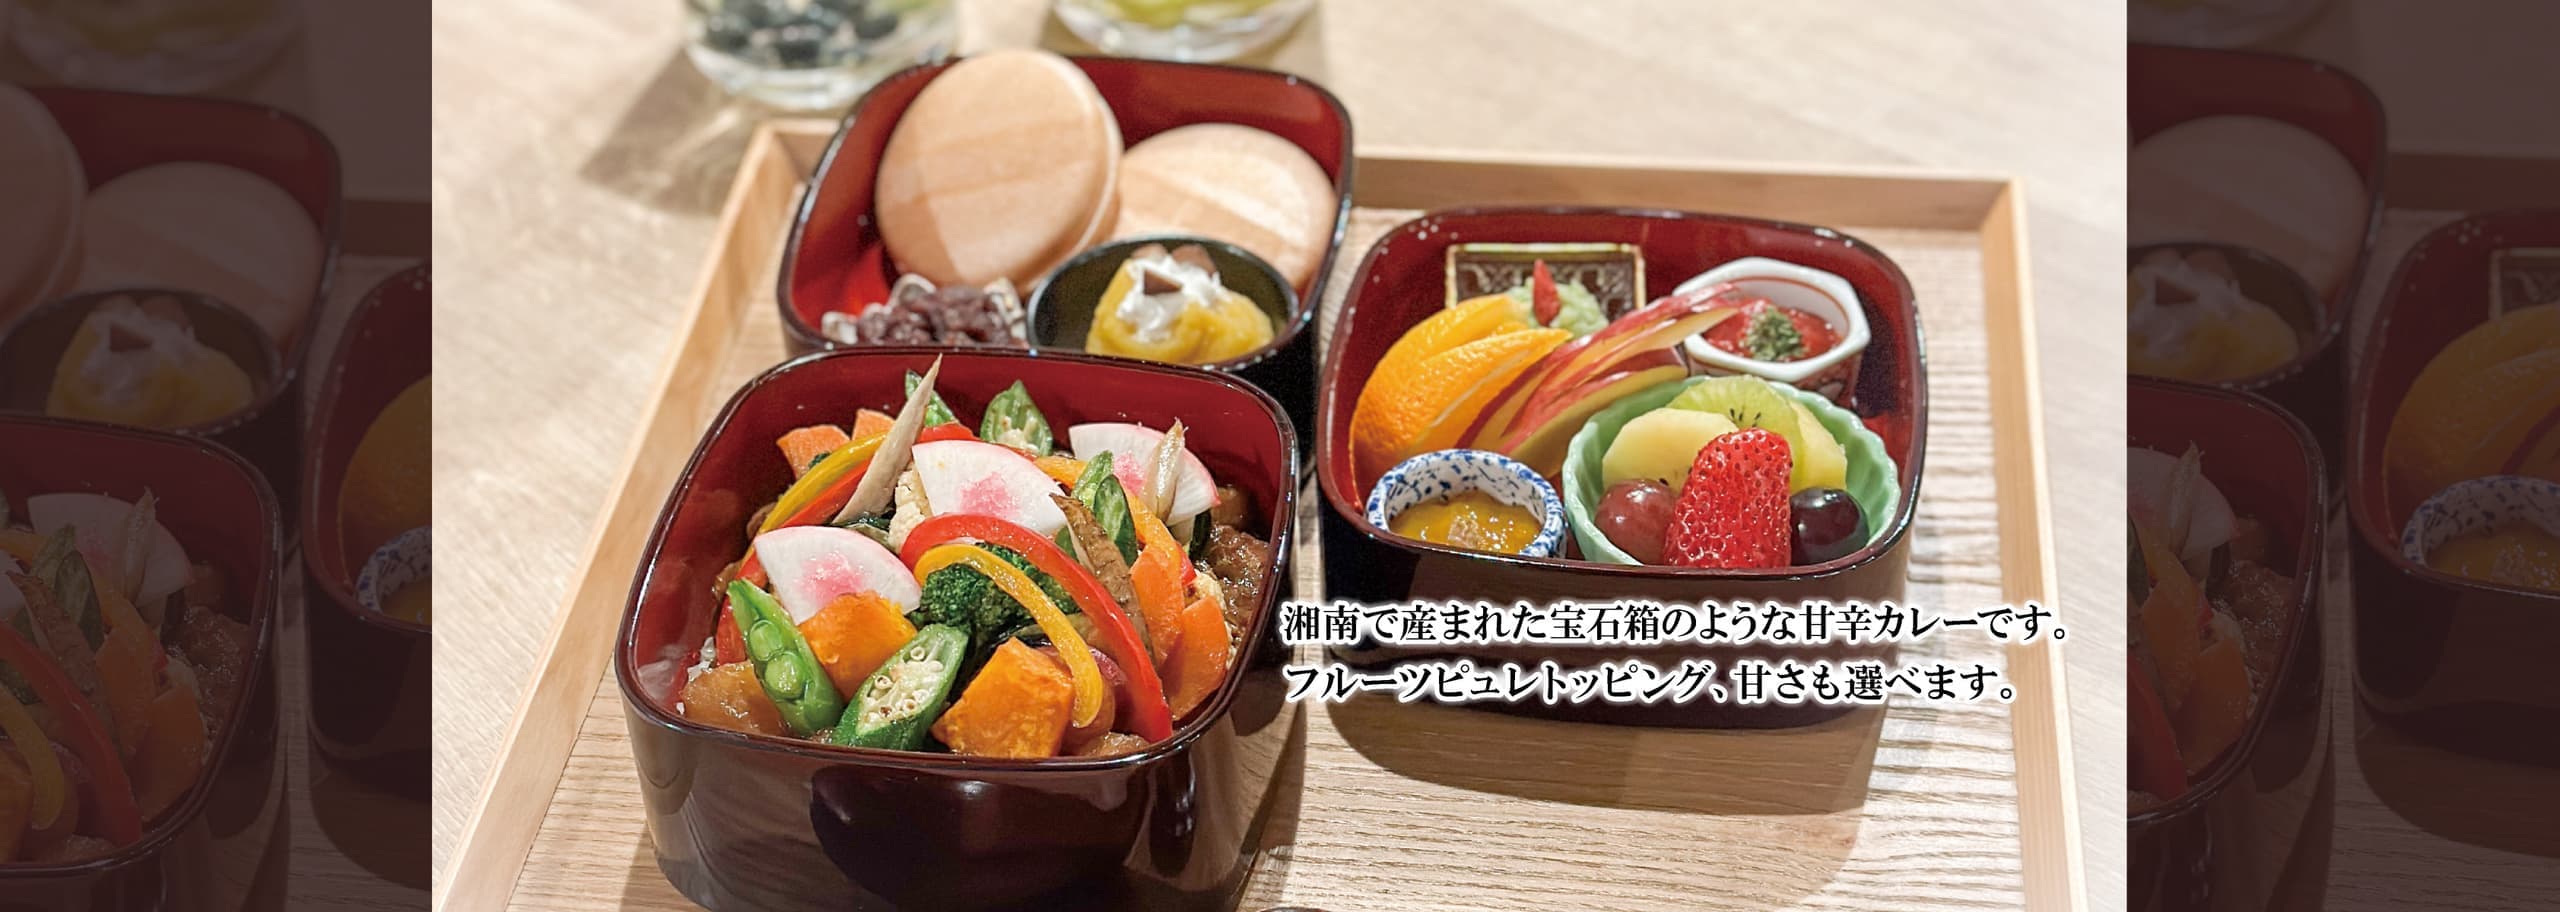 横浜で人気のカレー・焼き野菜玉手箱